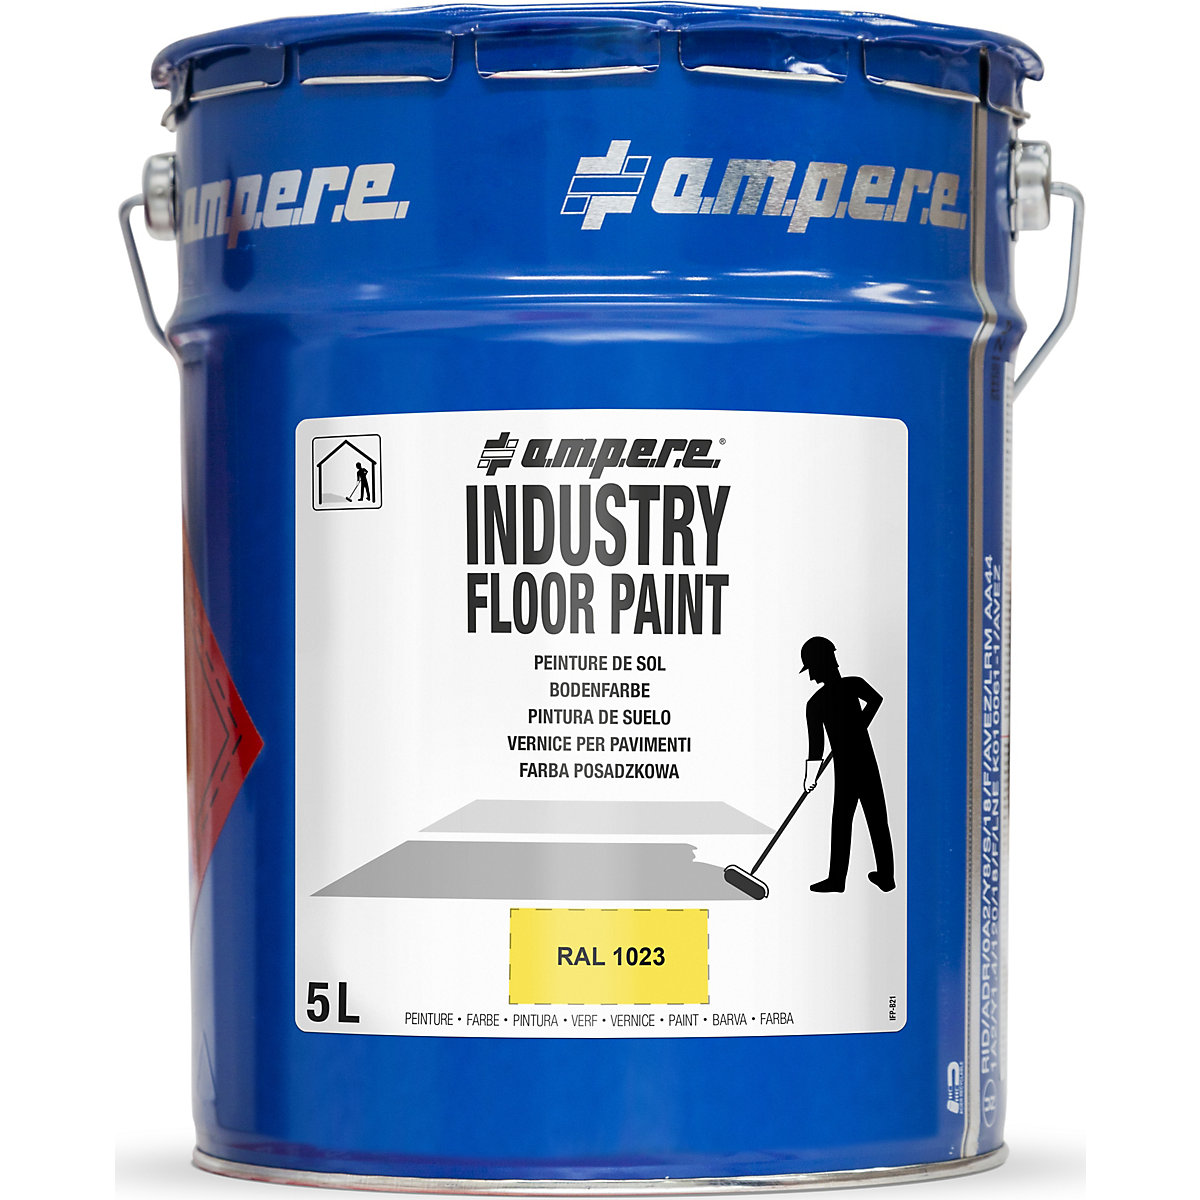 Farba do znakowania podłoża Industry Floor Paint® – Ampere, poj. 5 l, żółta-2